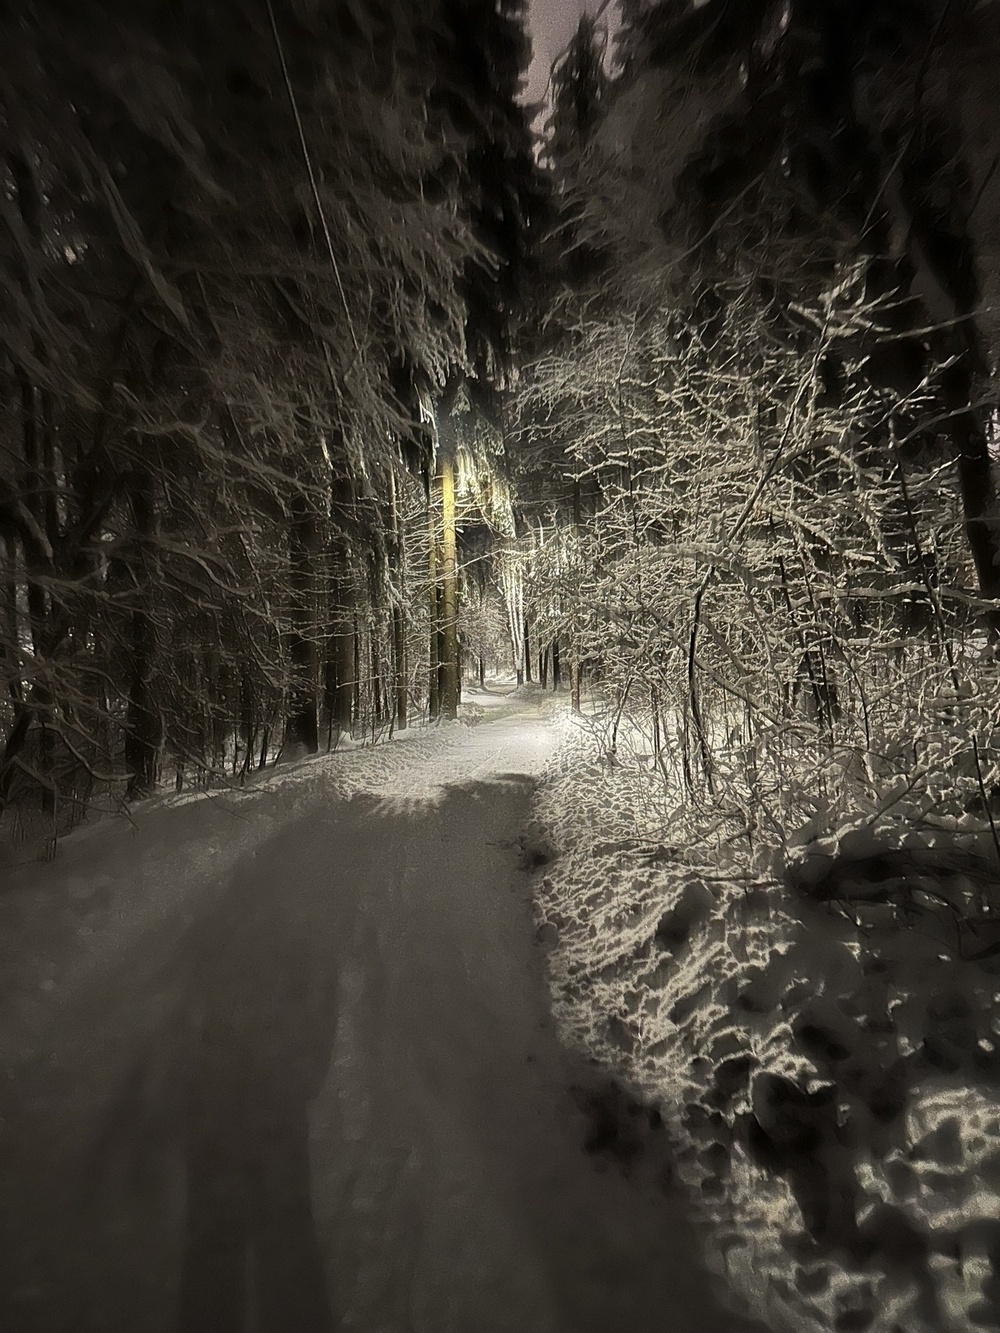 snowy path through a snowy forest